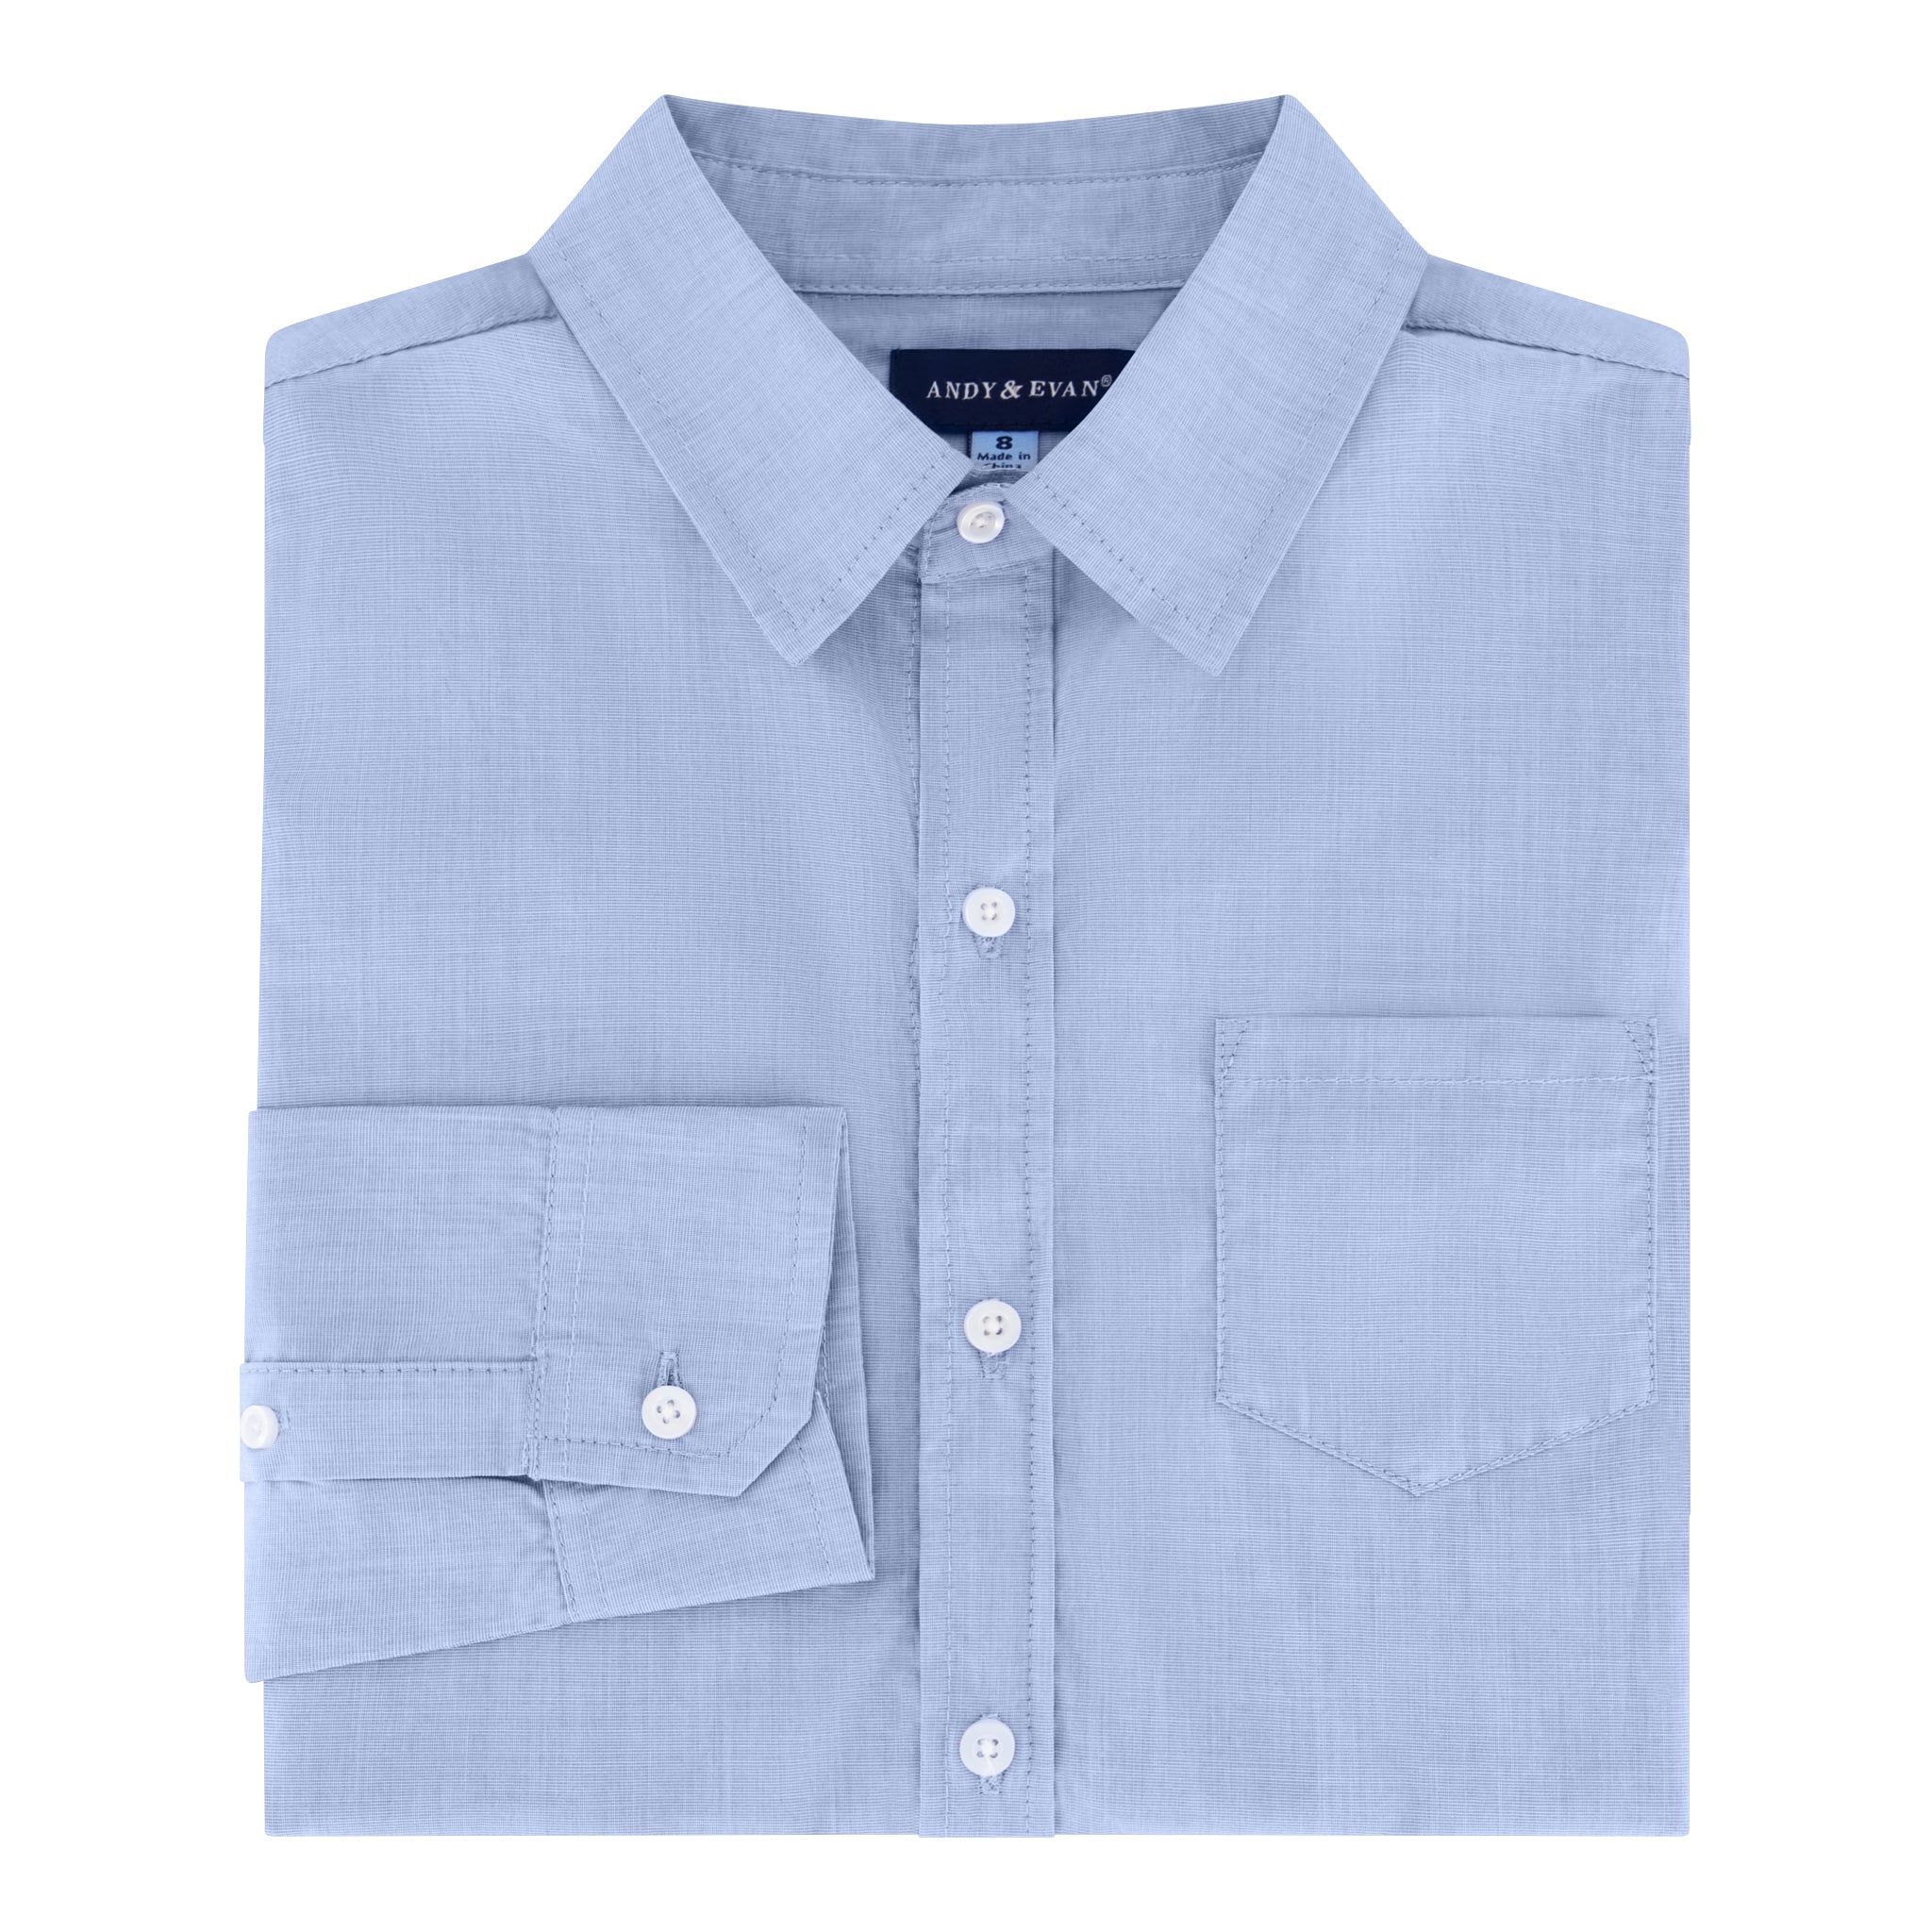 Infant Boy Blue Chambray Button-down Shirtzie®